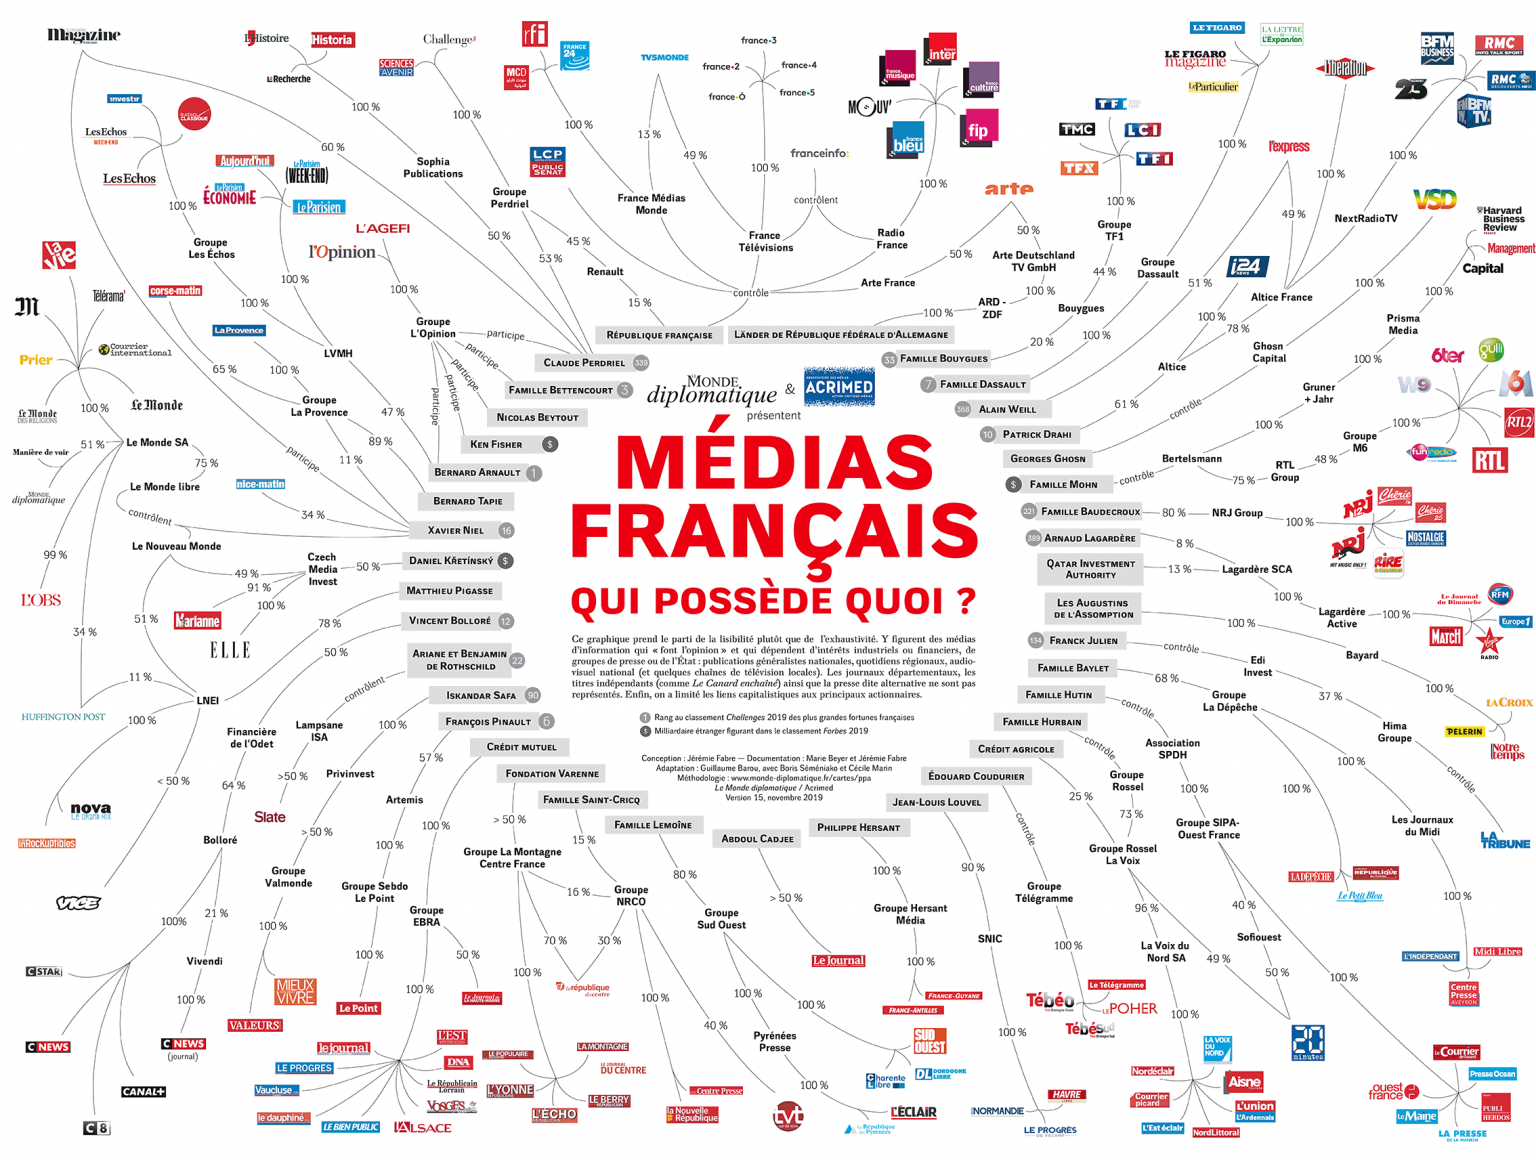 RSF ose se moquer des journalistes mauritaniens pourtant en France ce n’est guère mieux…